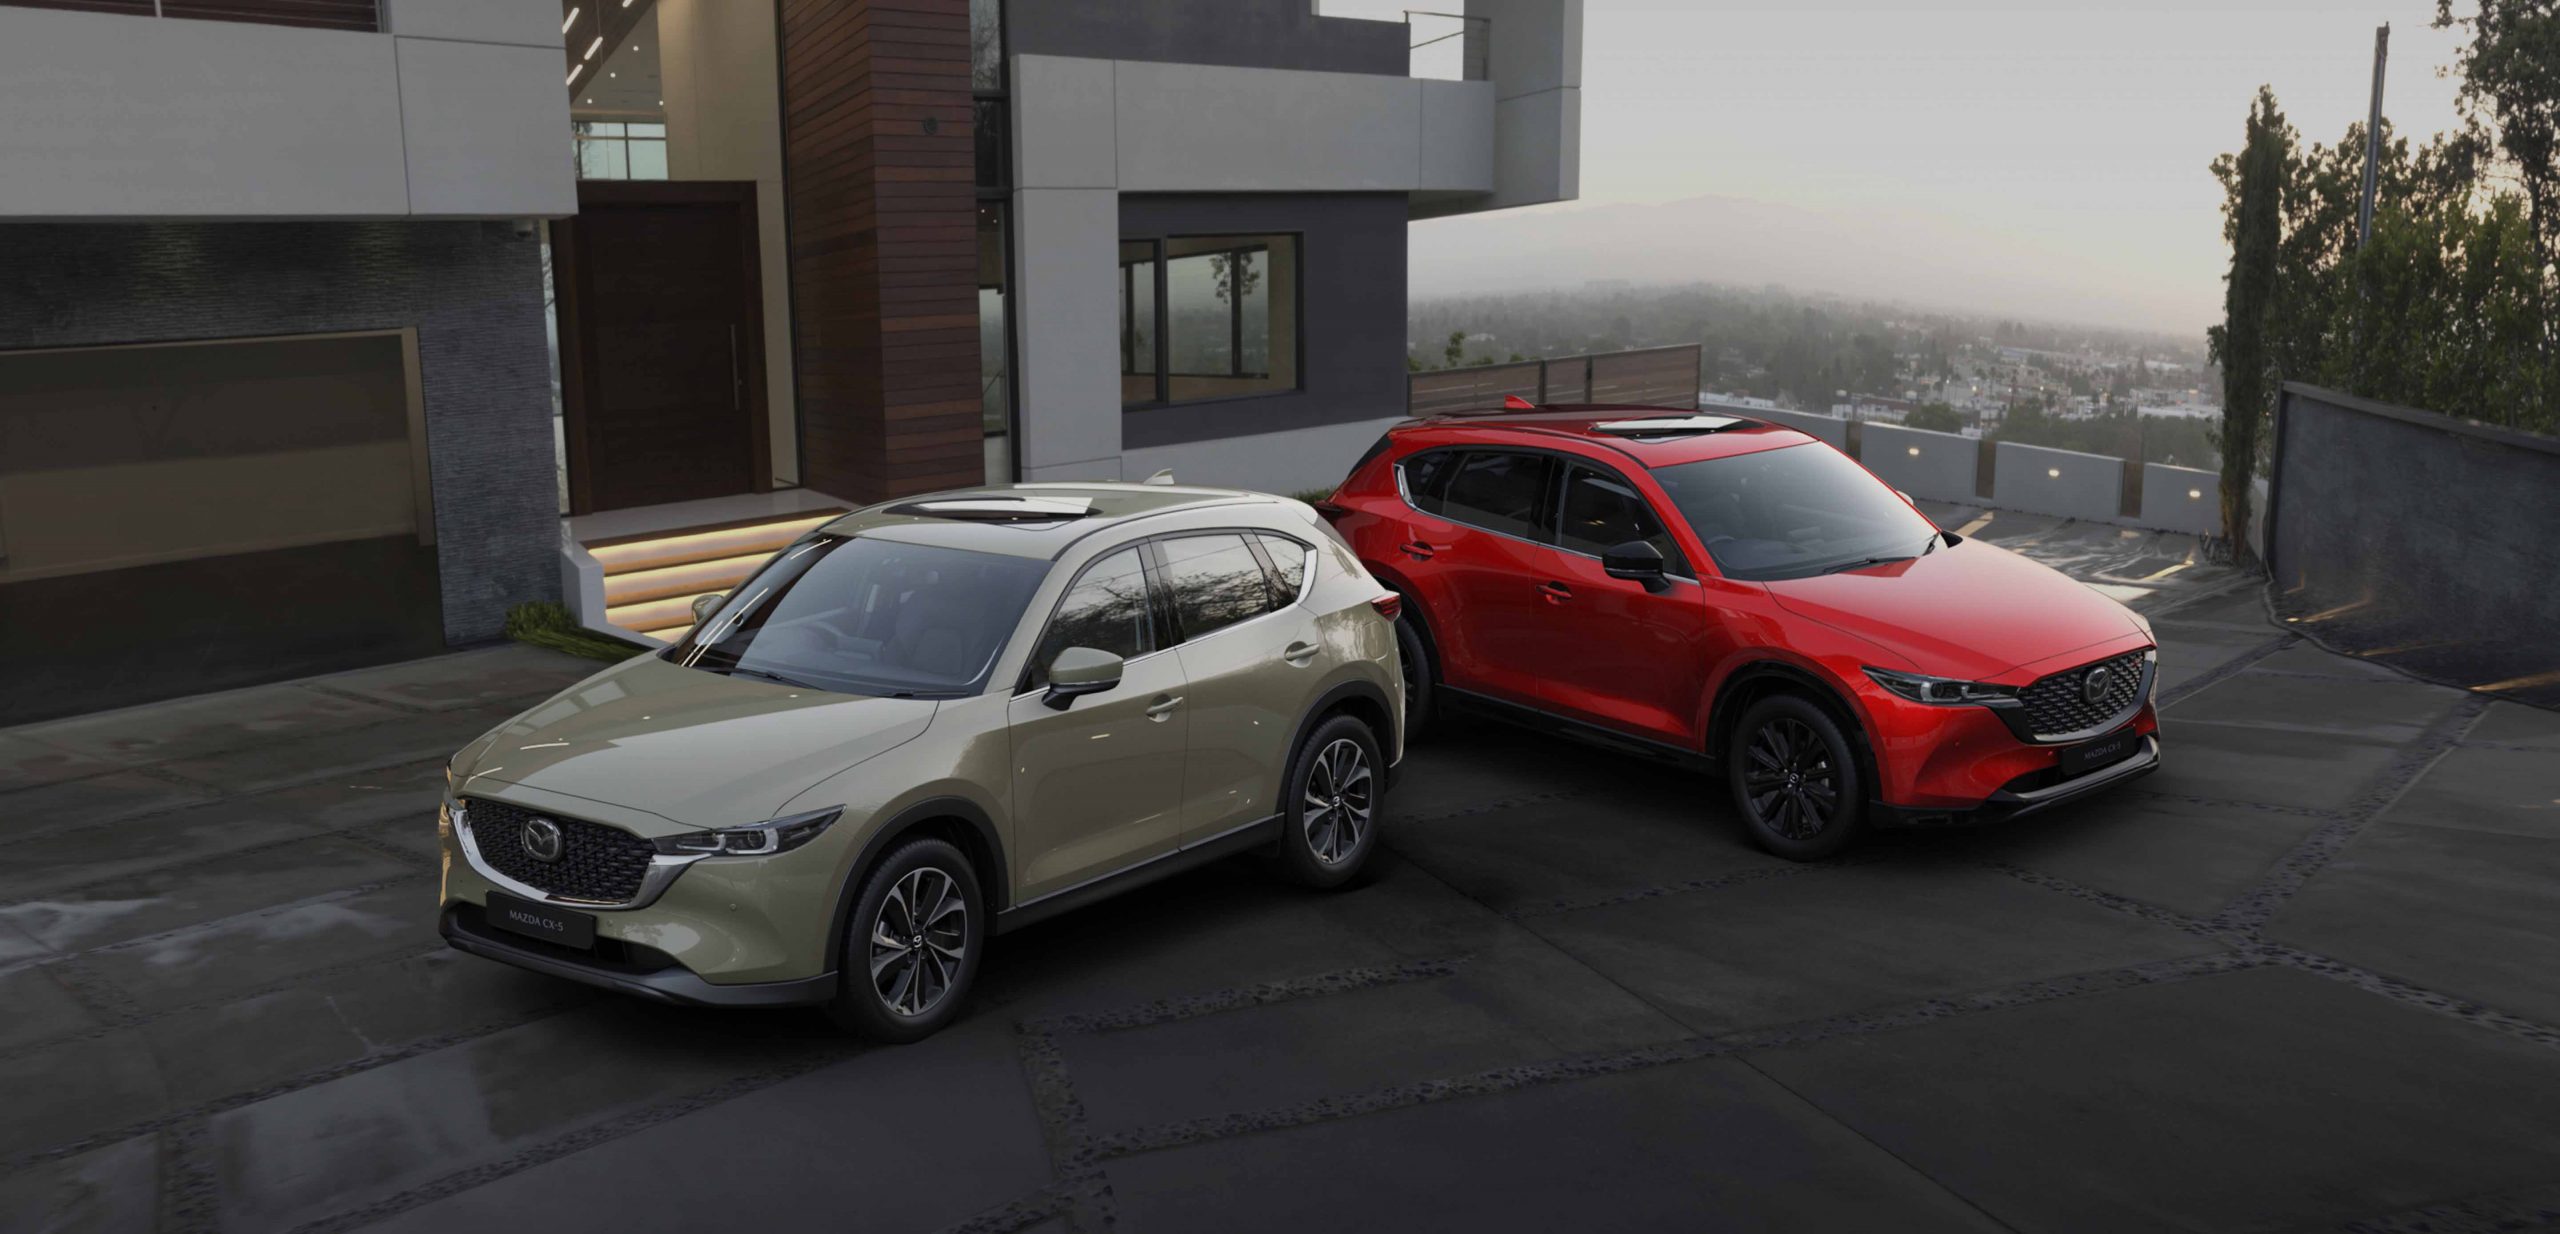 Harga Mazda CX 5 Terbaru, Review Spesifikasi dan Interior 2022!